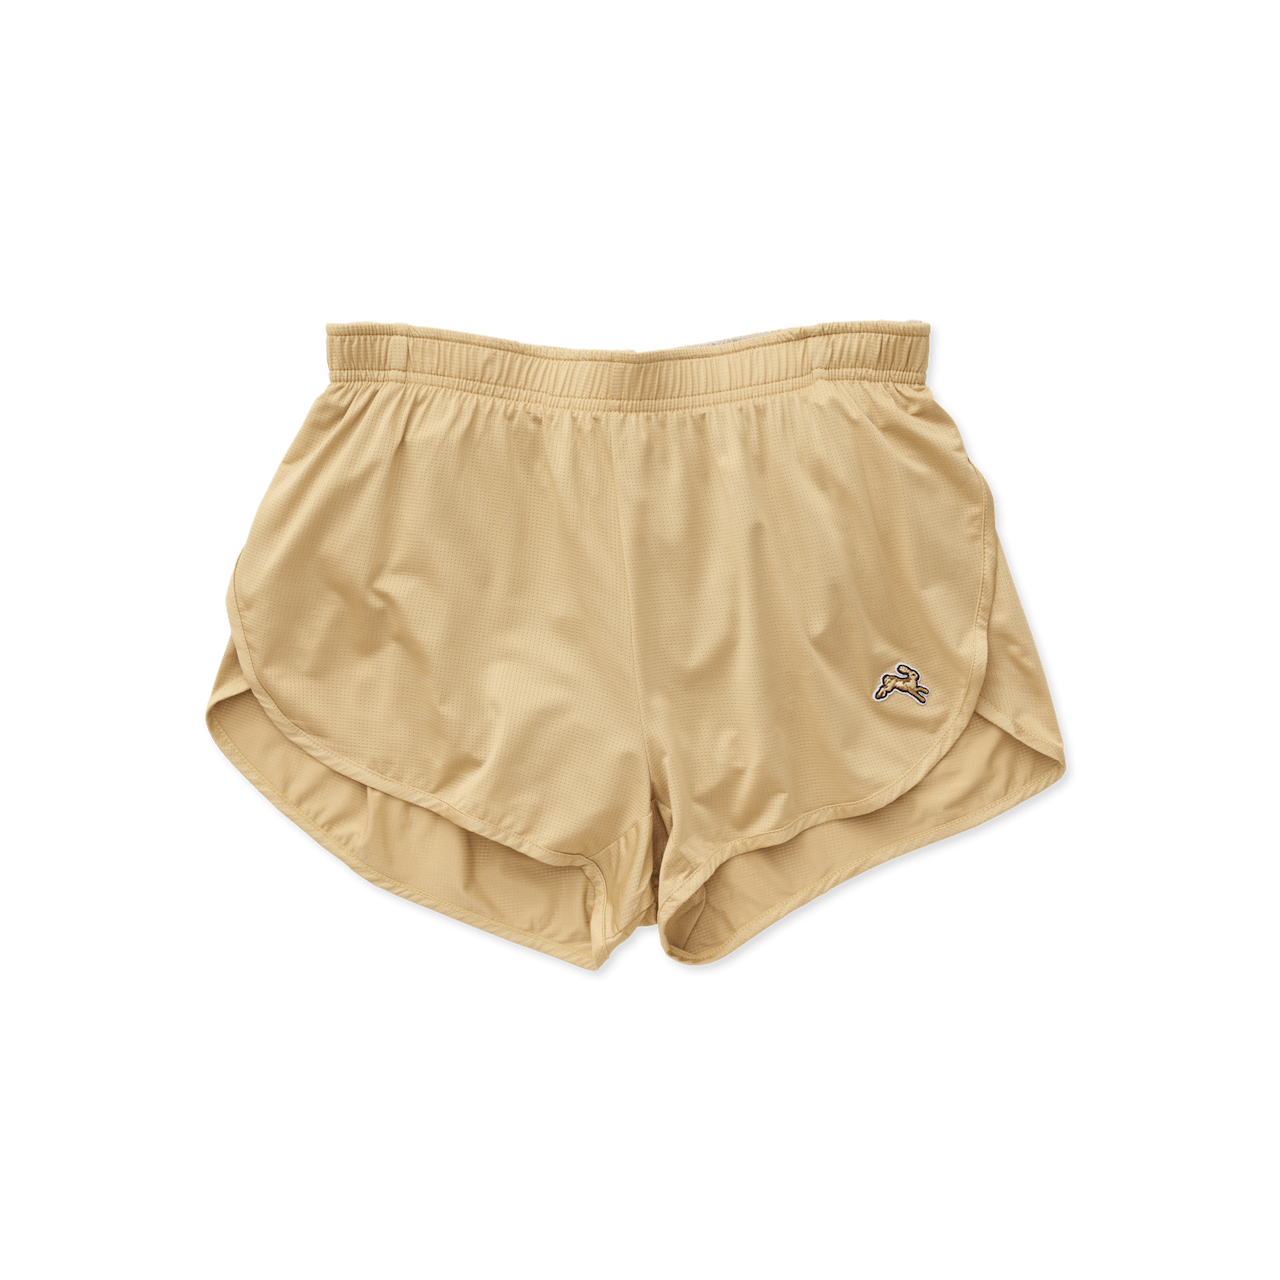 Ladies Boxer Shorts, Size : M, XL, XXL, Feature : Comfort Fit